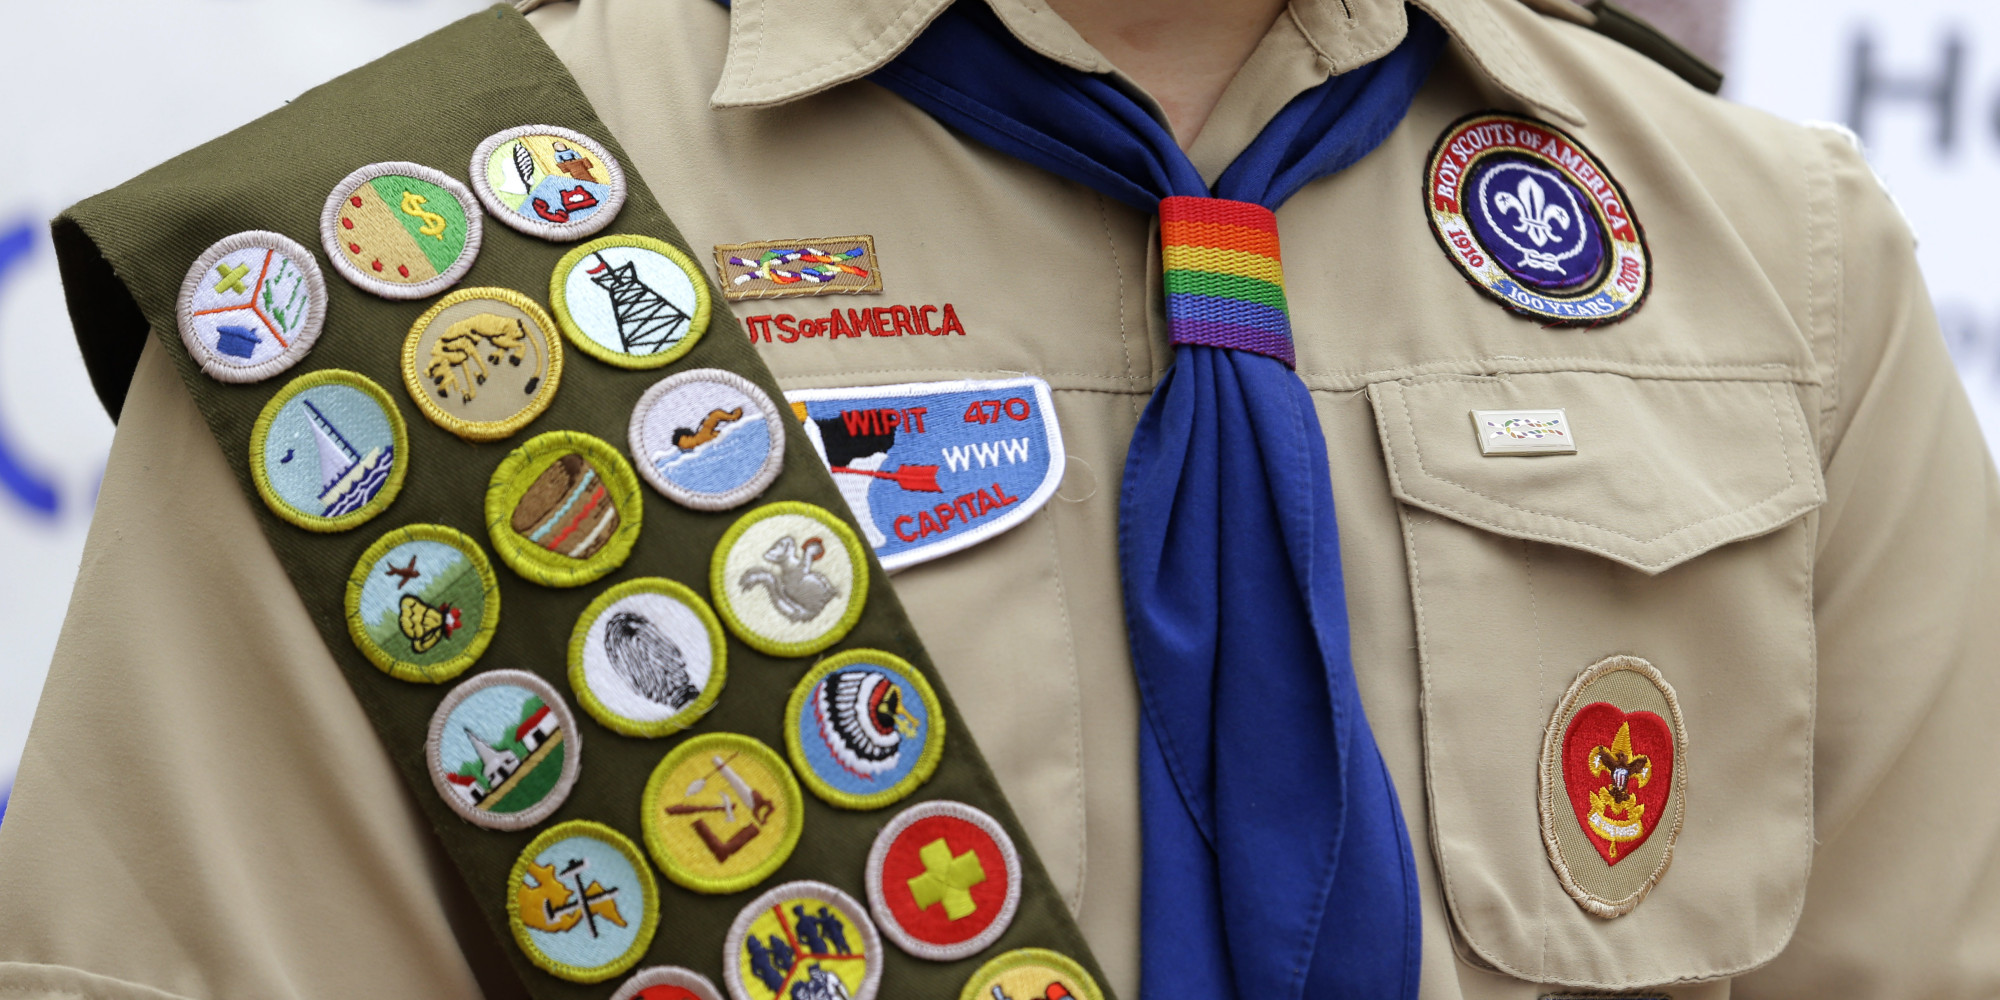 boy scout uniform patch placement